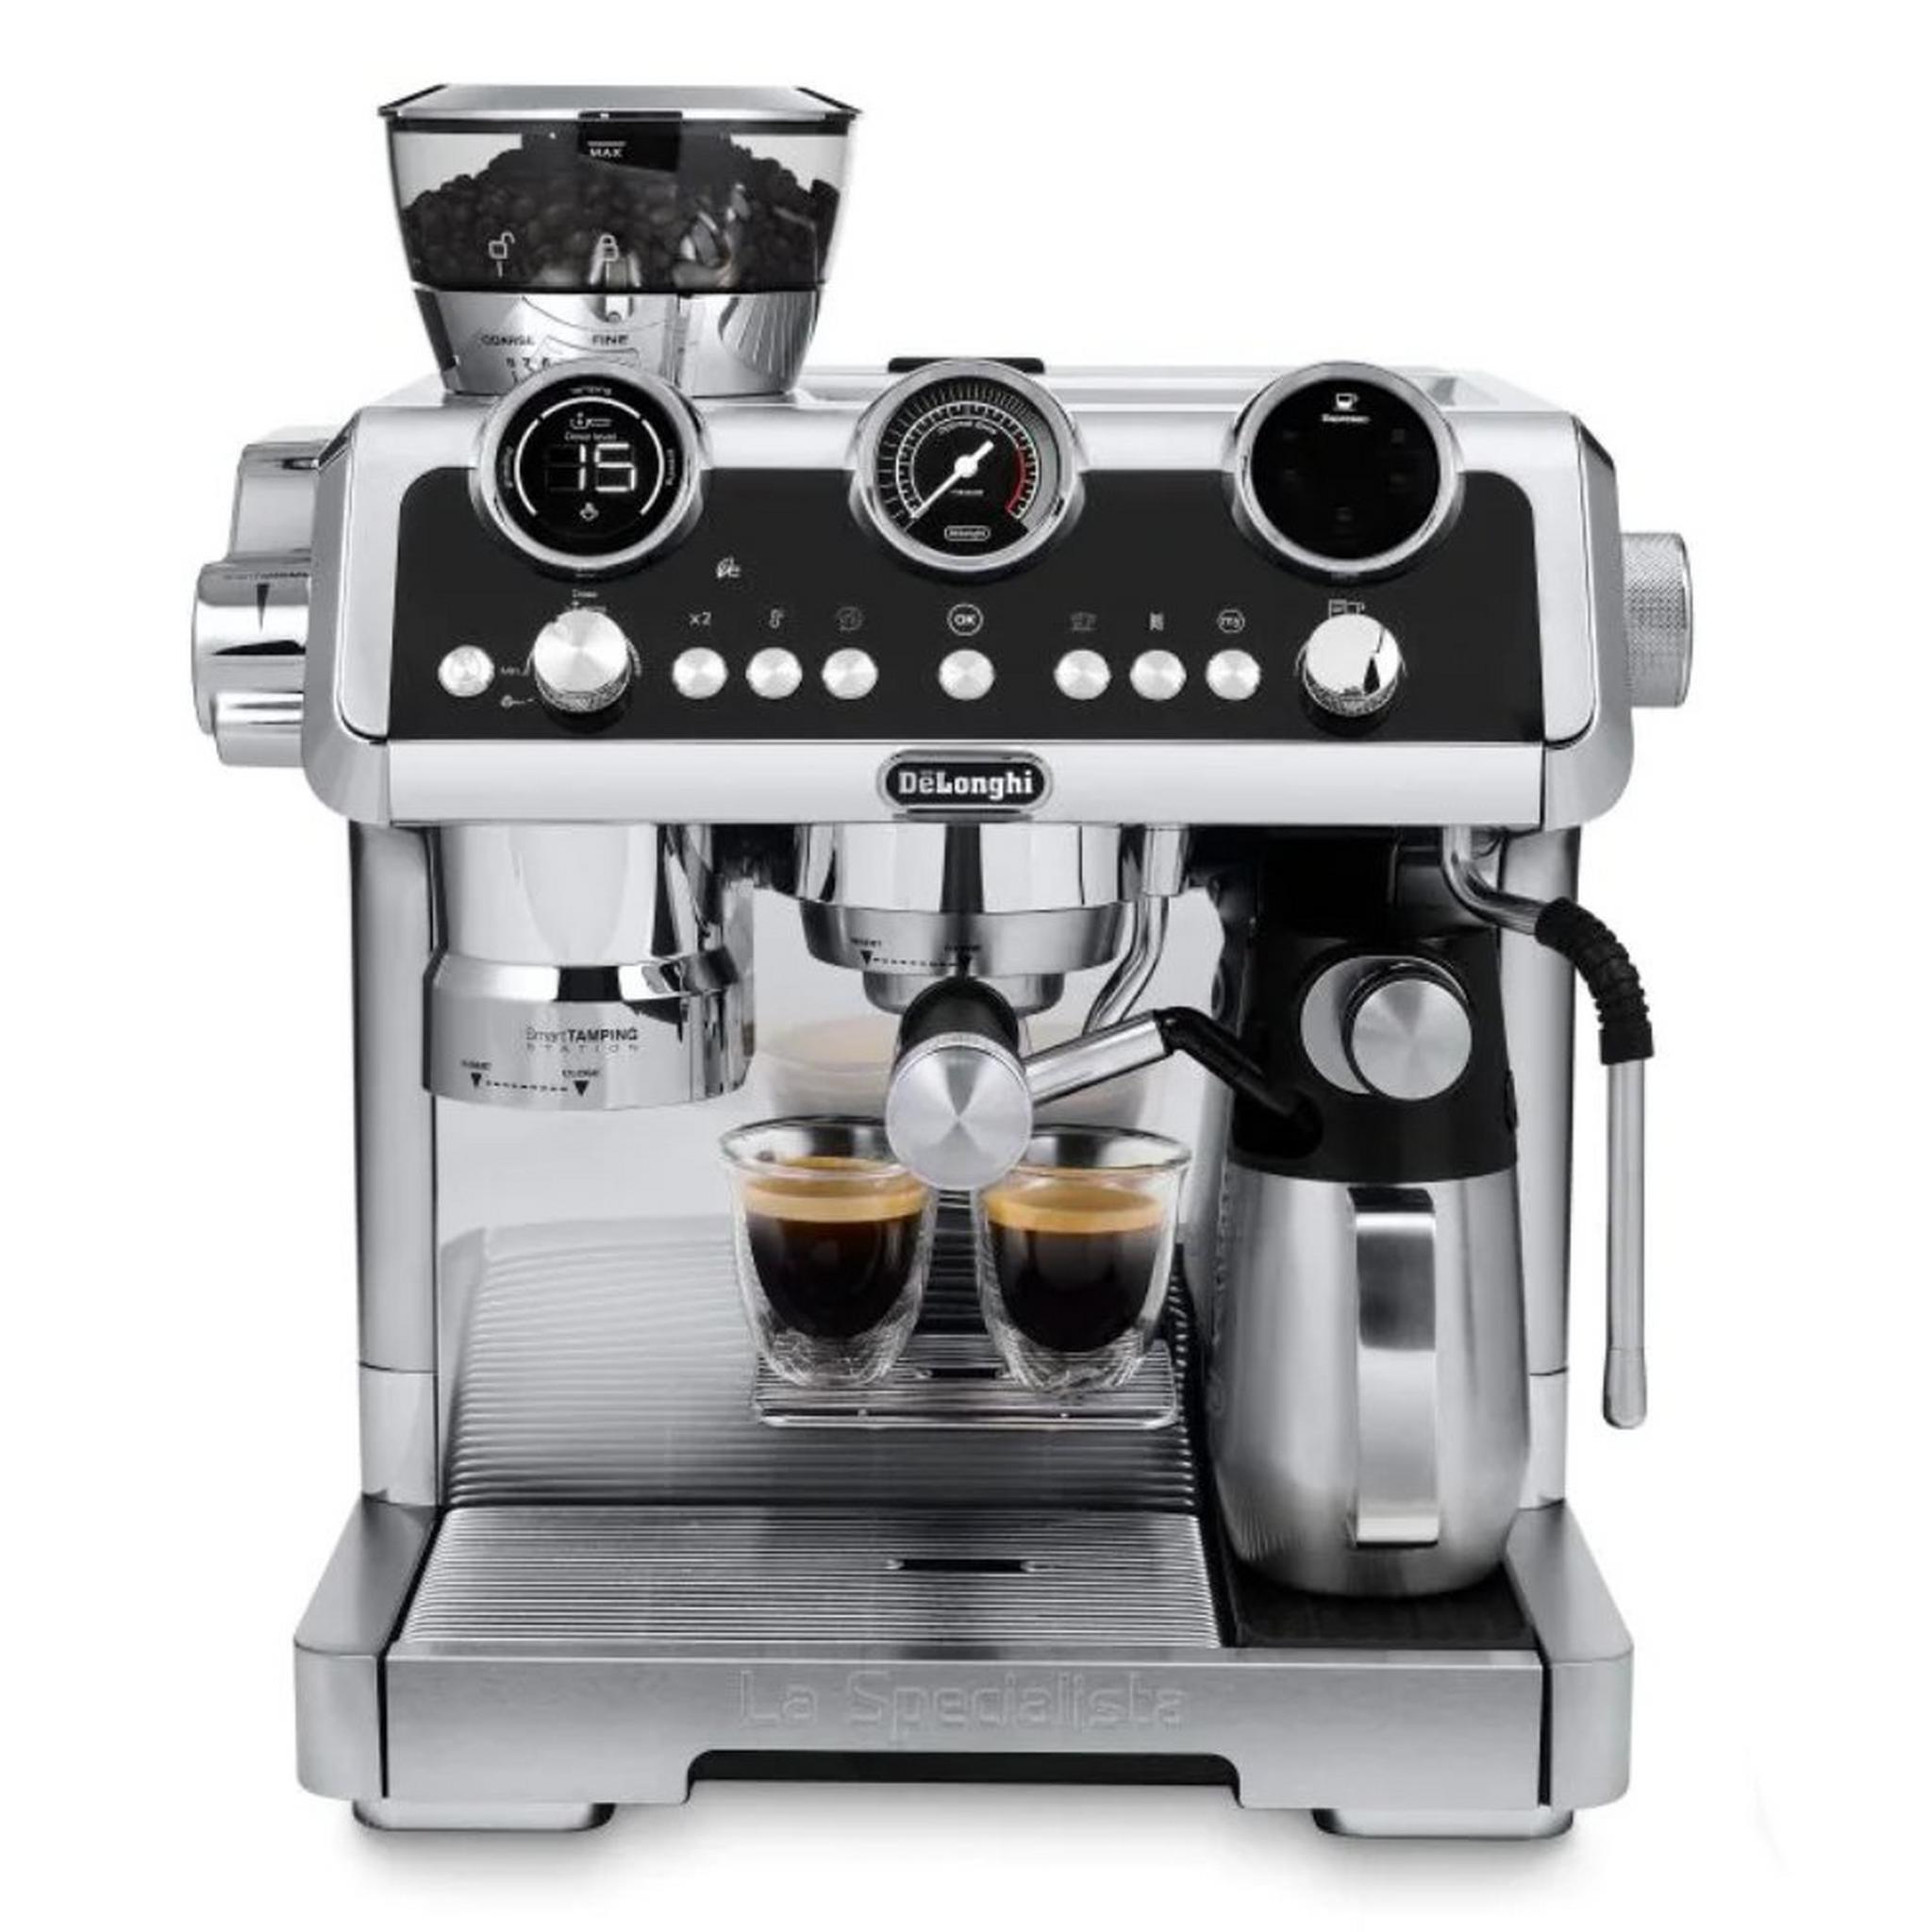 Delonghi Specialista Maestro pump espresso Coffee Machine, 1450W, 2.5L, EC9665 - Silver